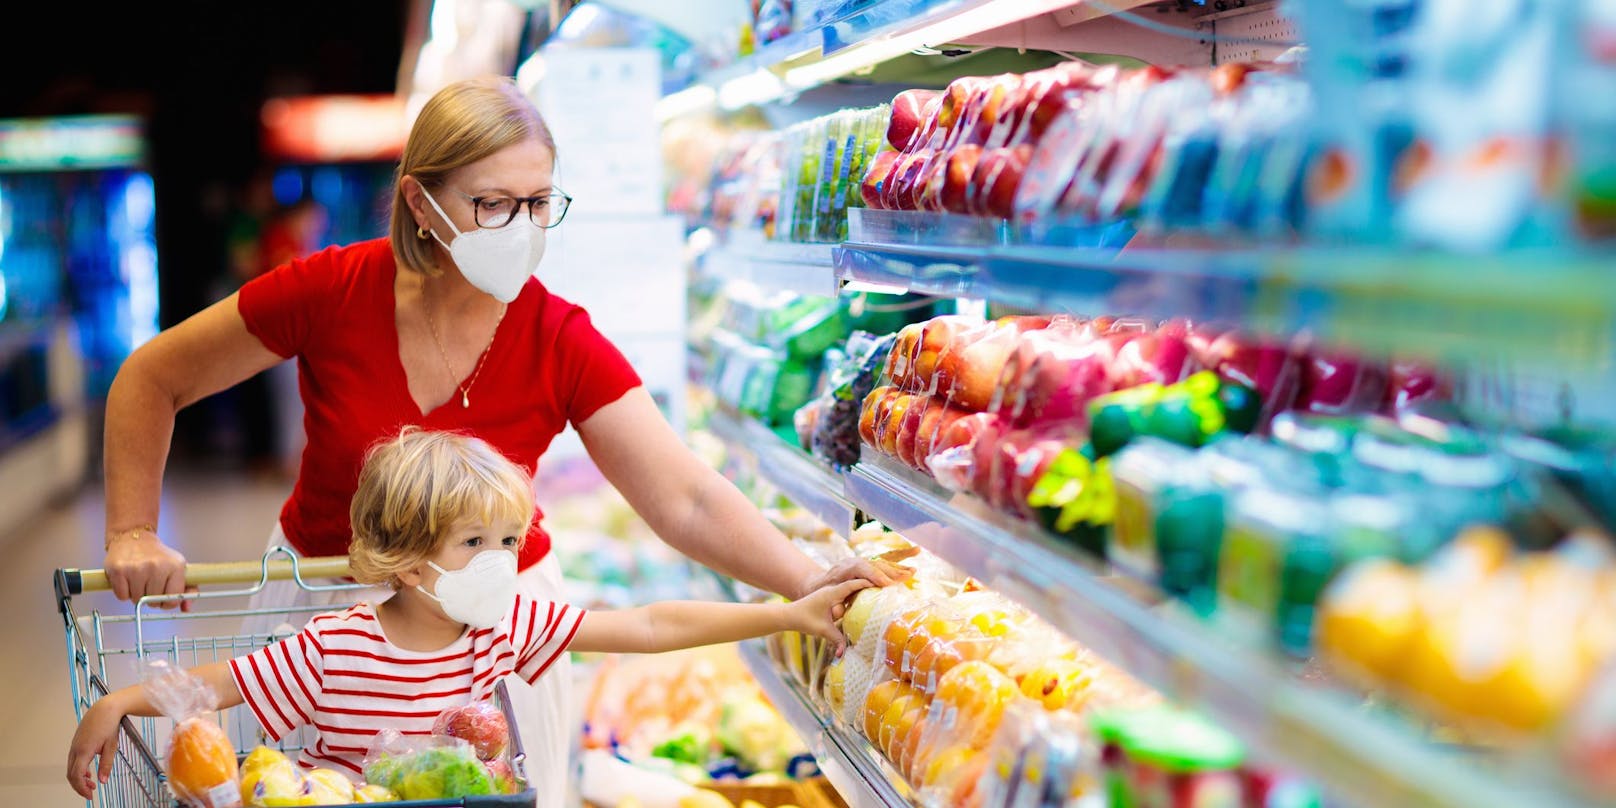 Eine Frau mit Kind beim Einkaufen in einem Supermarkt. (Symbolbild)